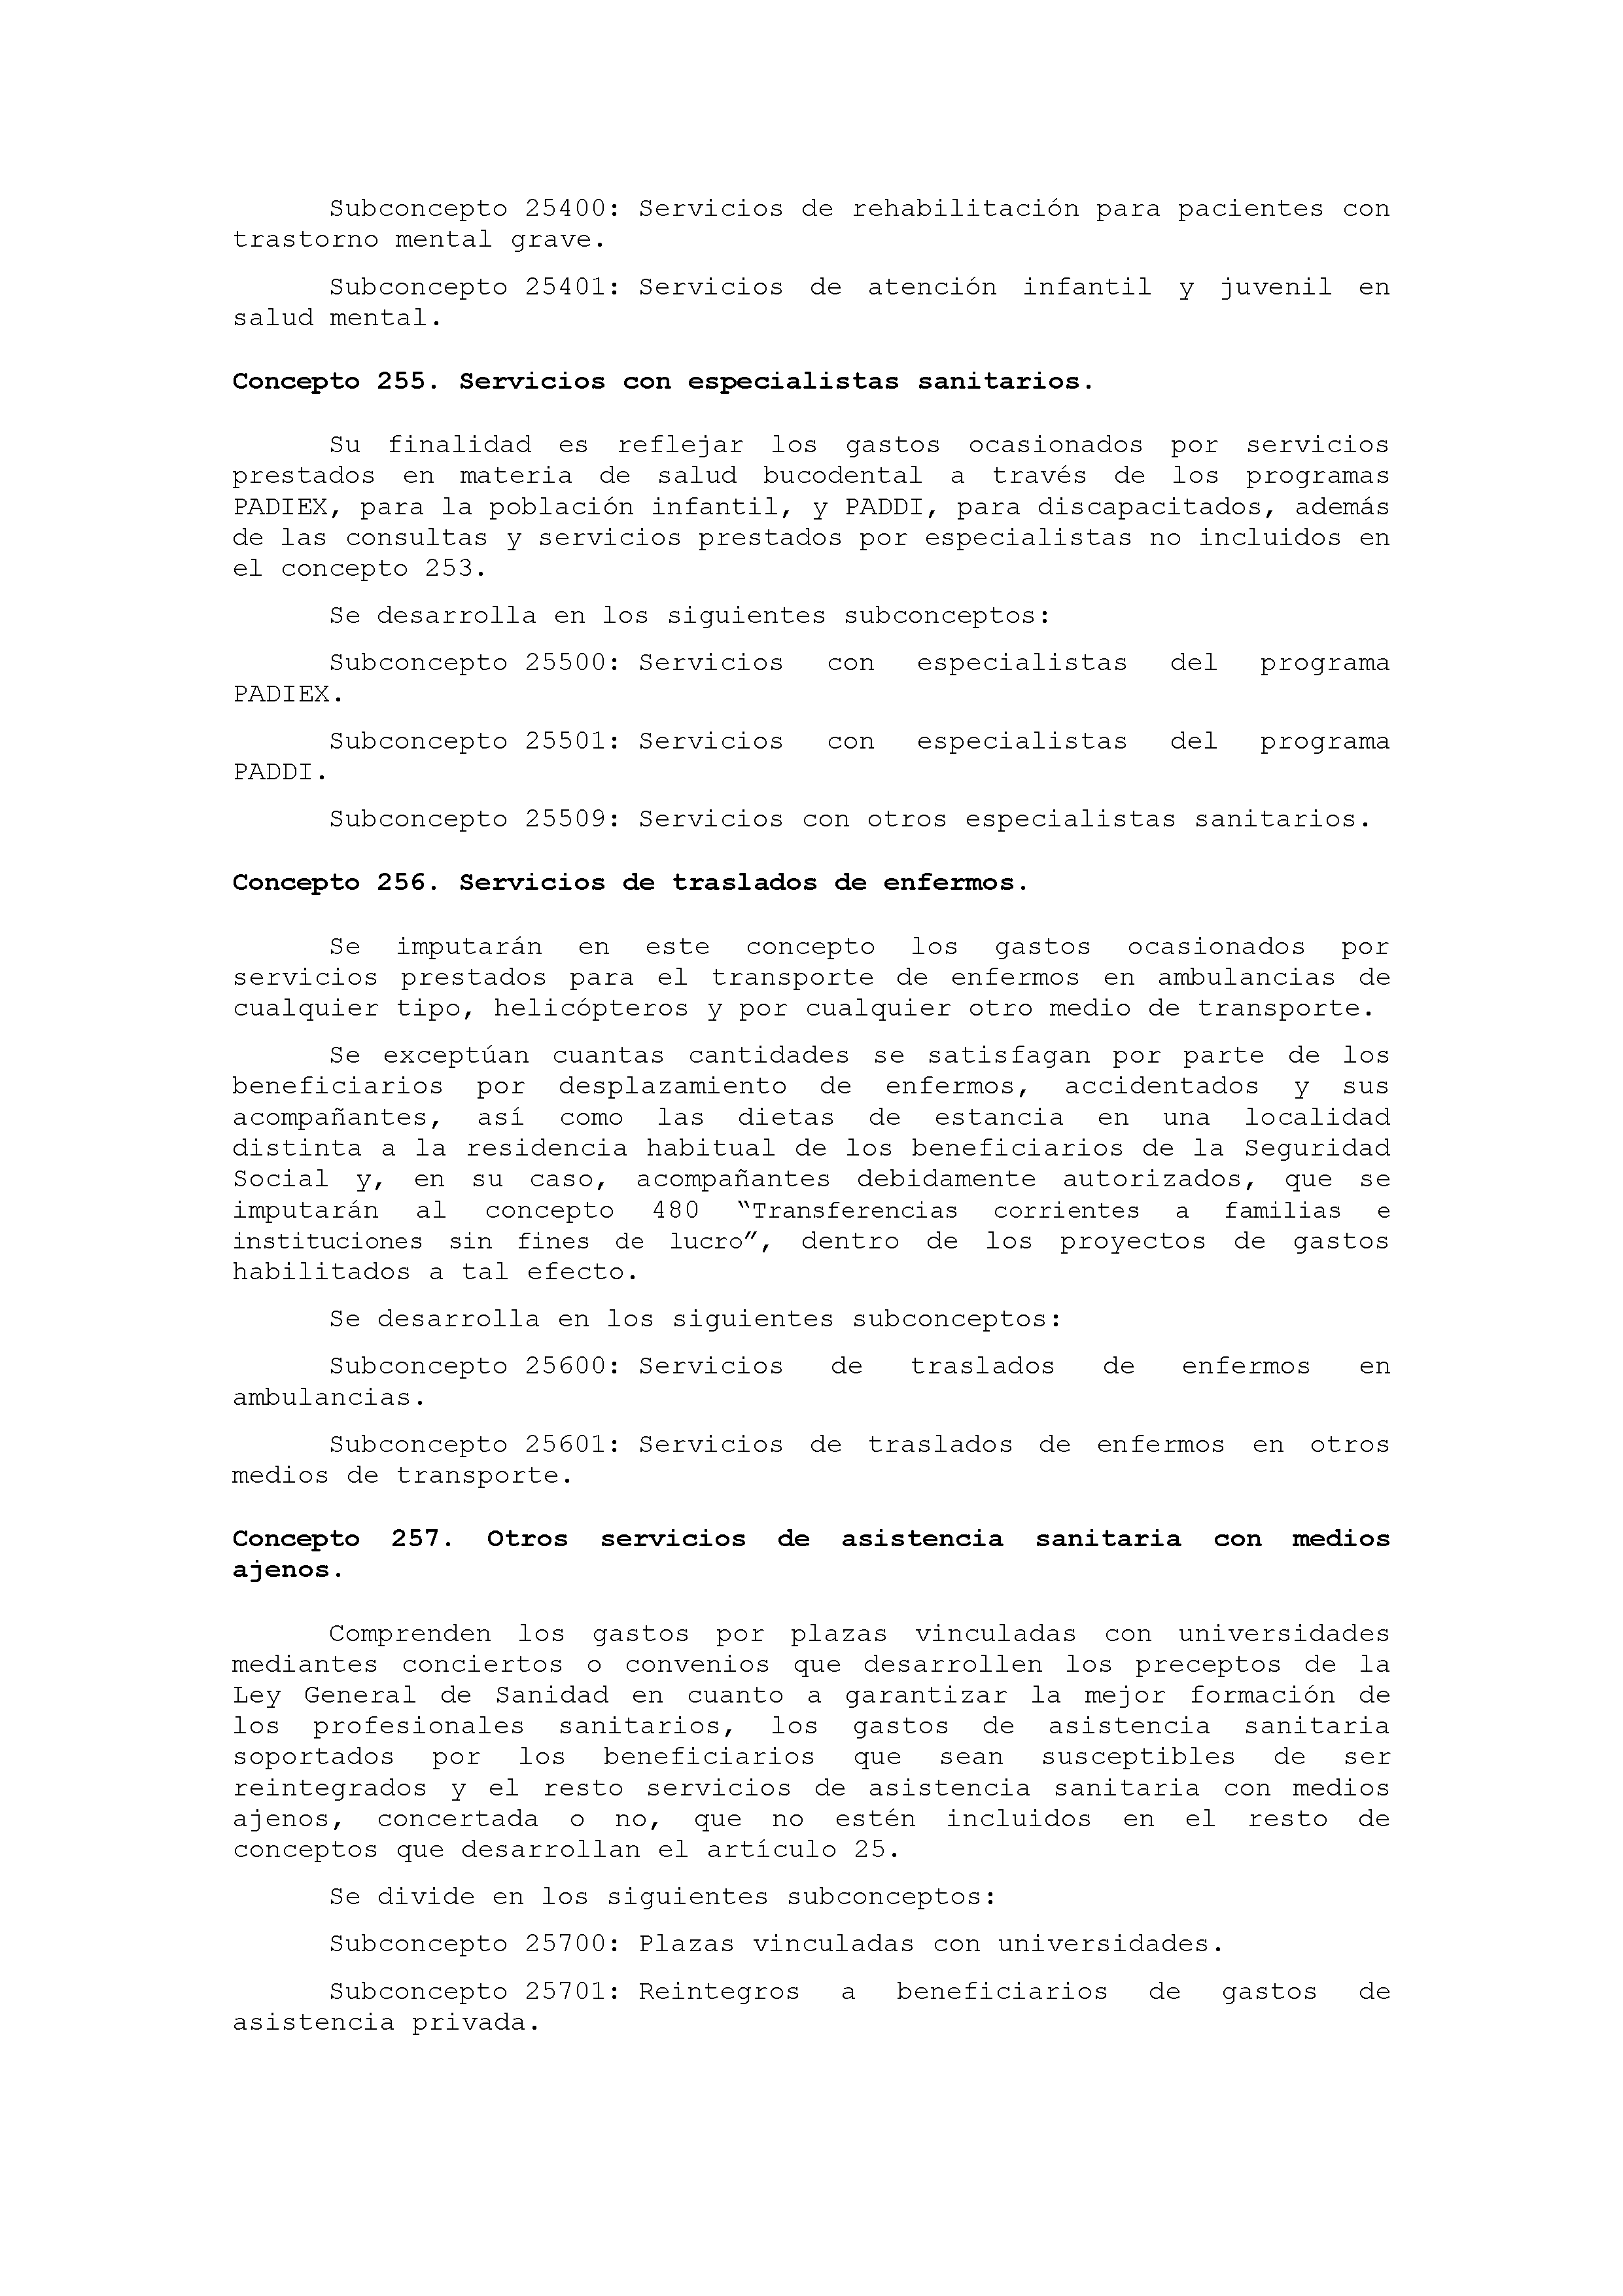 ANEXO IX CÓDIGO DE LA CLASIFICACIÓN ECONÓMICA DE LOS GASTOS PÚBLICOS Pag 26